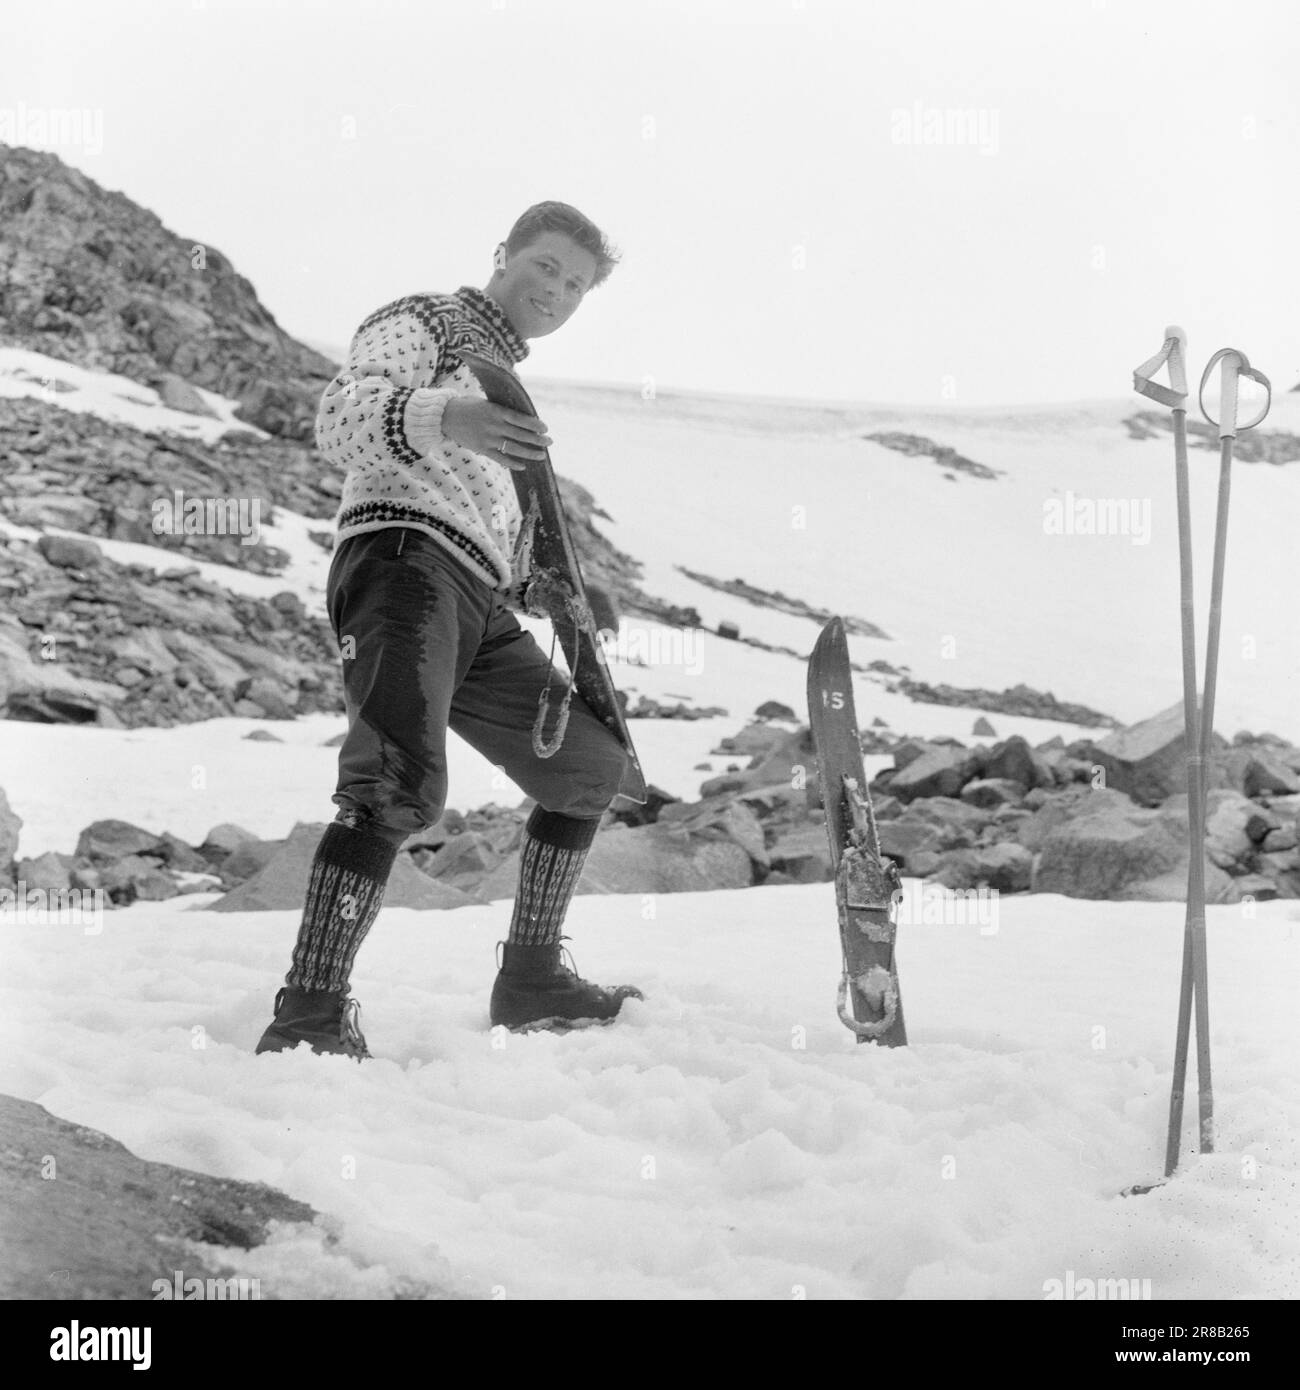 Aktuell 31-4-1960: Breite Skier über den Gletscher unter der Zunge des schwer gerissenen Svellnosbreen gibt es einen Skistall mit weniger als einem Meter langen Skiern. Aber wenn sie klein sind, sind sie im Gegenzug breit wie Schneeschuhe. Es hat keinen Sinn, sie zu treffen, wenn man es einfach schafft. Die Skier müssen für den Sommereinsatz geschmiert werden. Der Spezialist Kjell Fjeld hat eine gute Schicht Klebstoff untergelegt und jetzt glättet er liebevoll die Skier. Foto: Ivar Aaserud / Aktuell / NTB ***FOTO NICHT ABGEBILDET*** Stockfoto